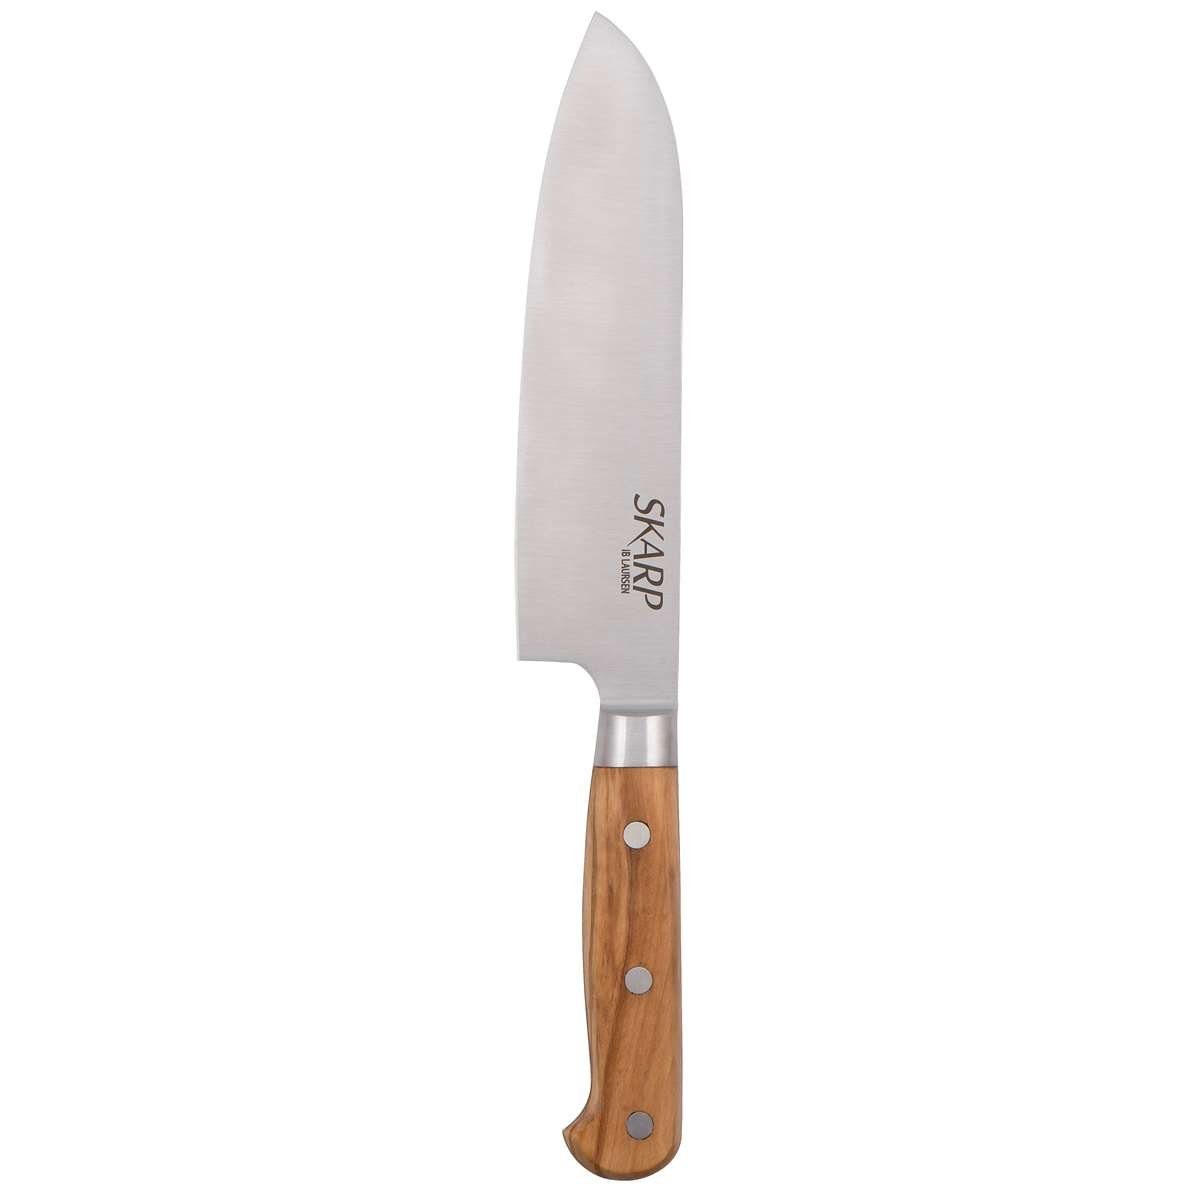 Messer Santokumesser Laursen 5098-00 SKARP Ib Stahl Küchenmesser 30cm Santokumesser Laursen -